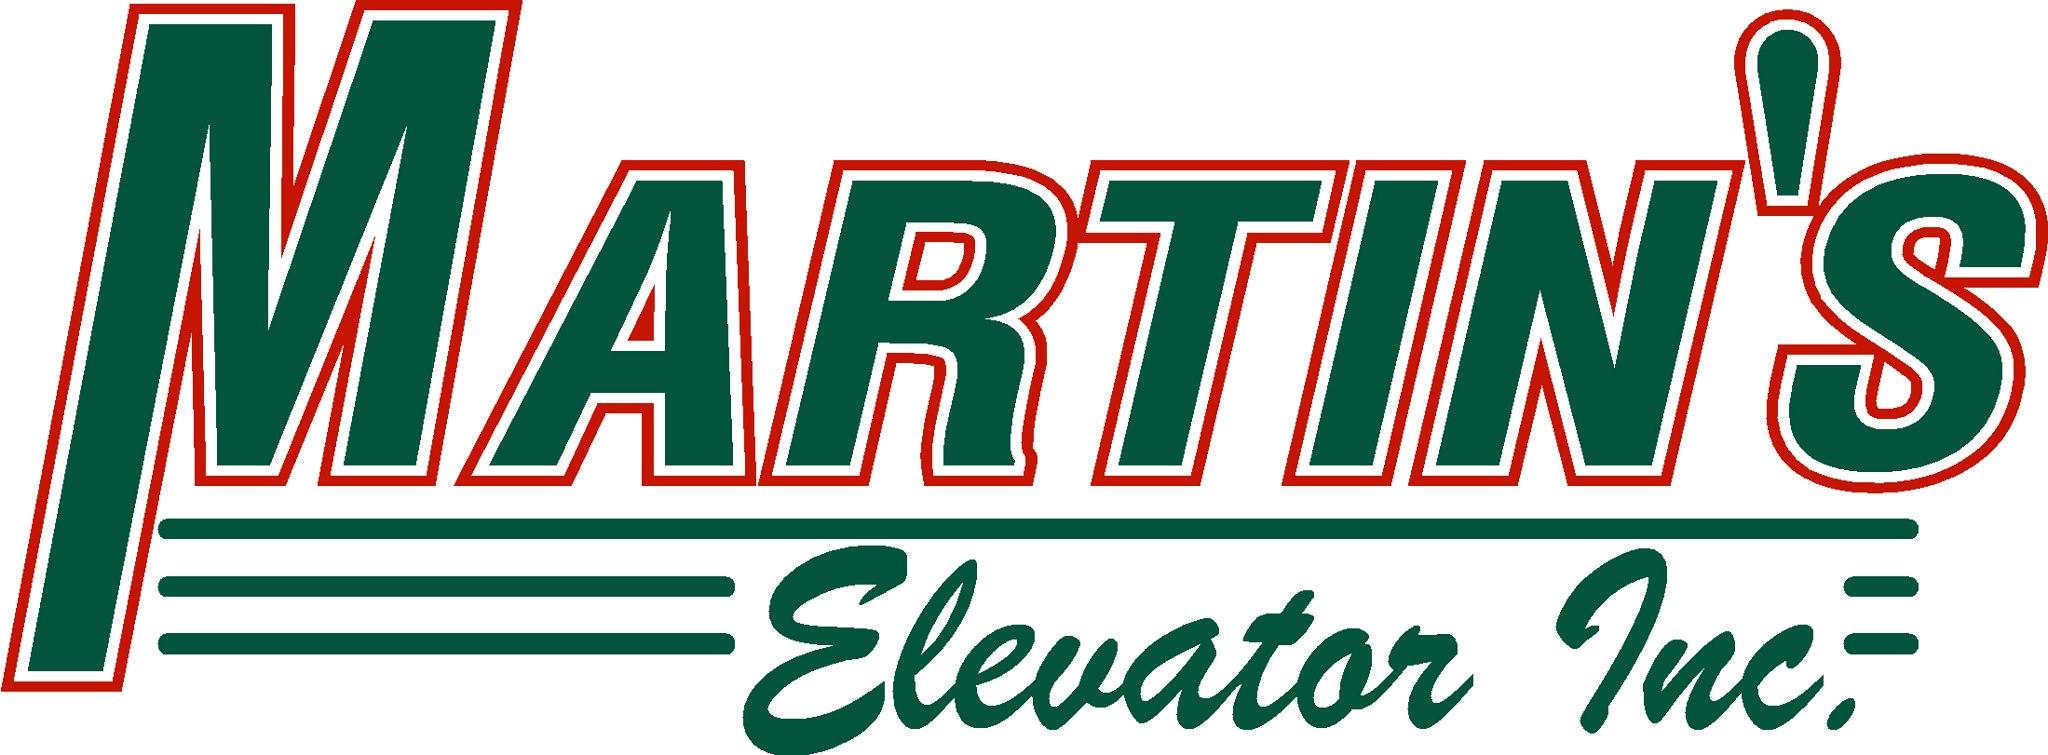 Martin's Elevator